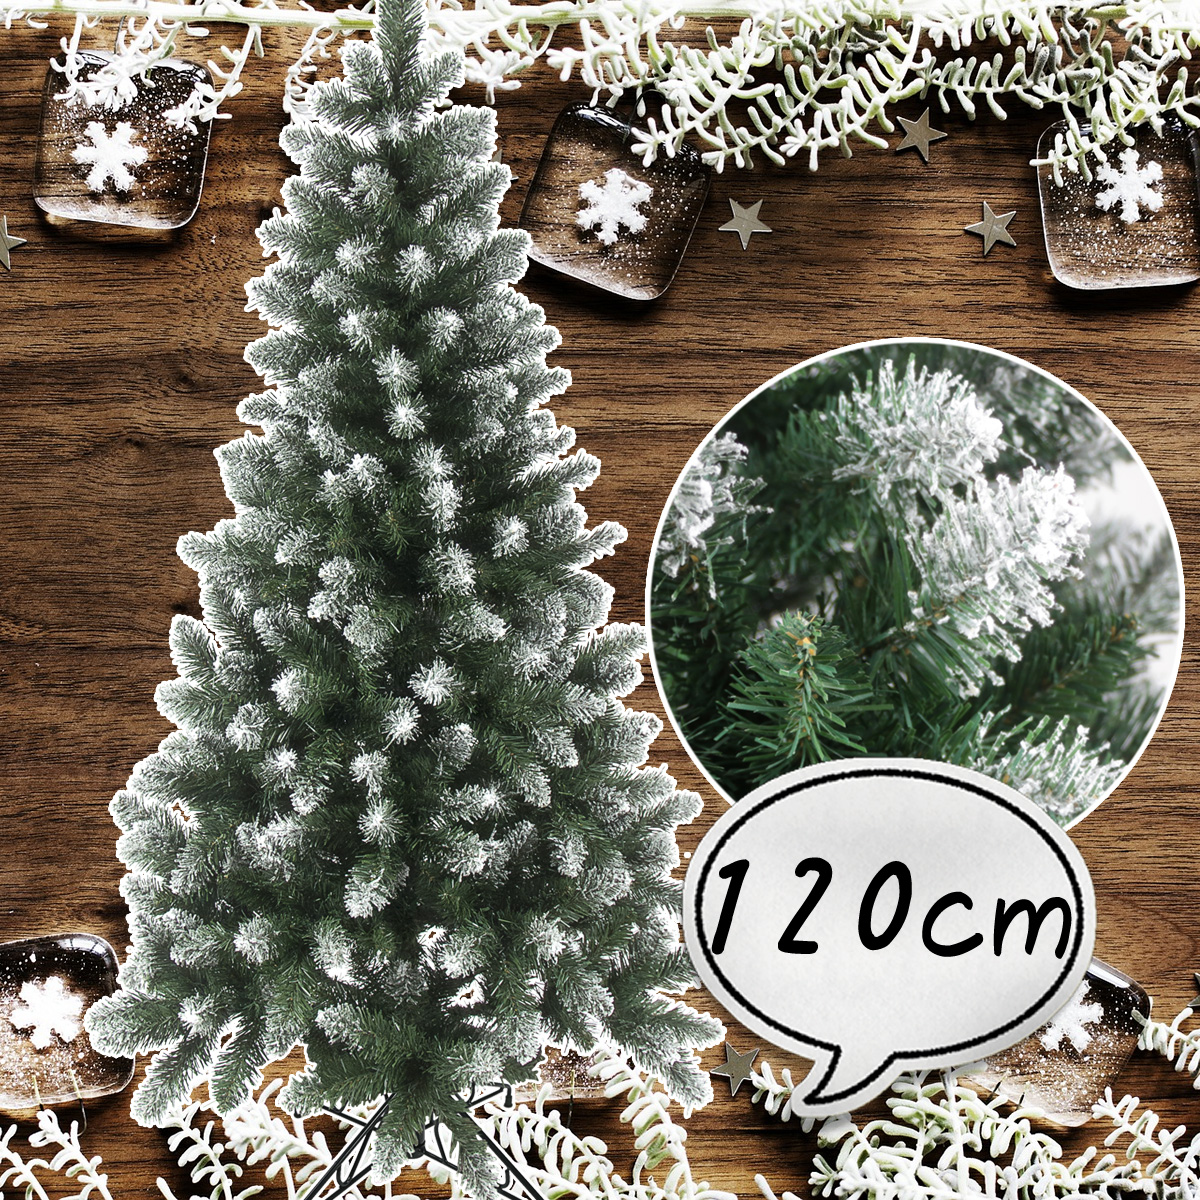 楽天市場 クリスマスツリー 1cm 雪付き ポイント スノーツリー ツリーの木 北欧 おしゃれ クリスマス屋